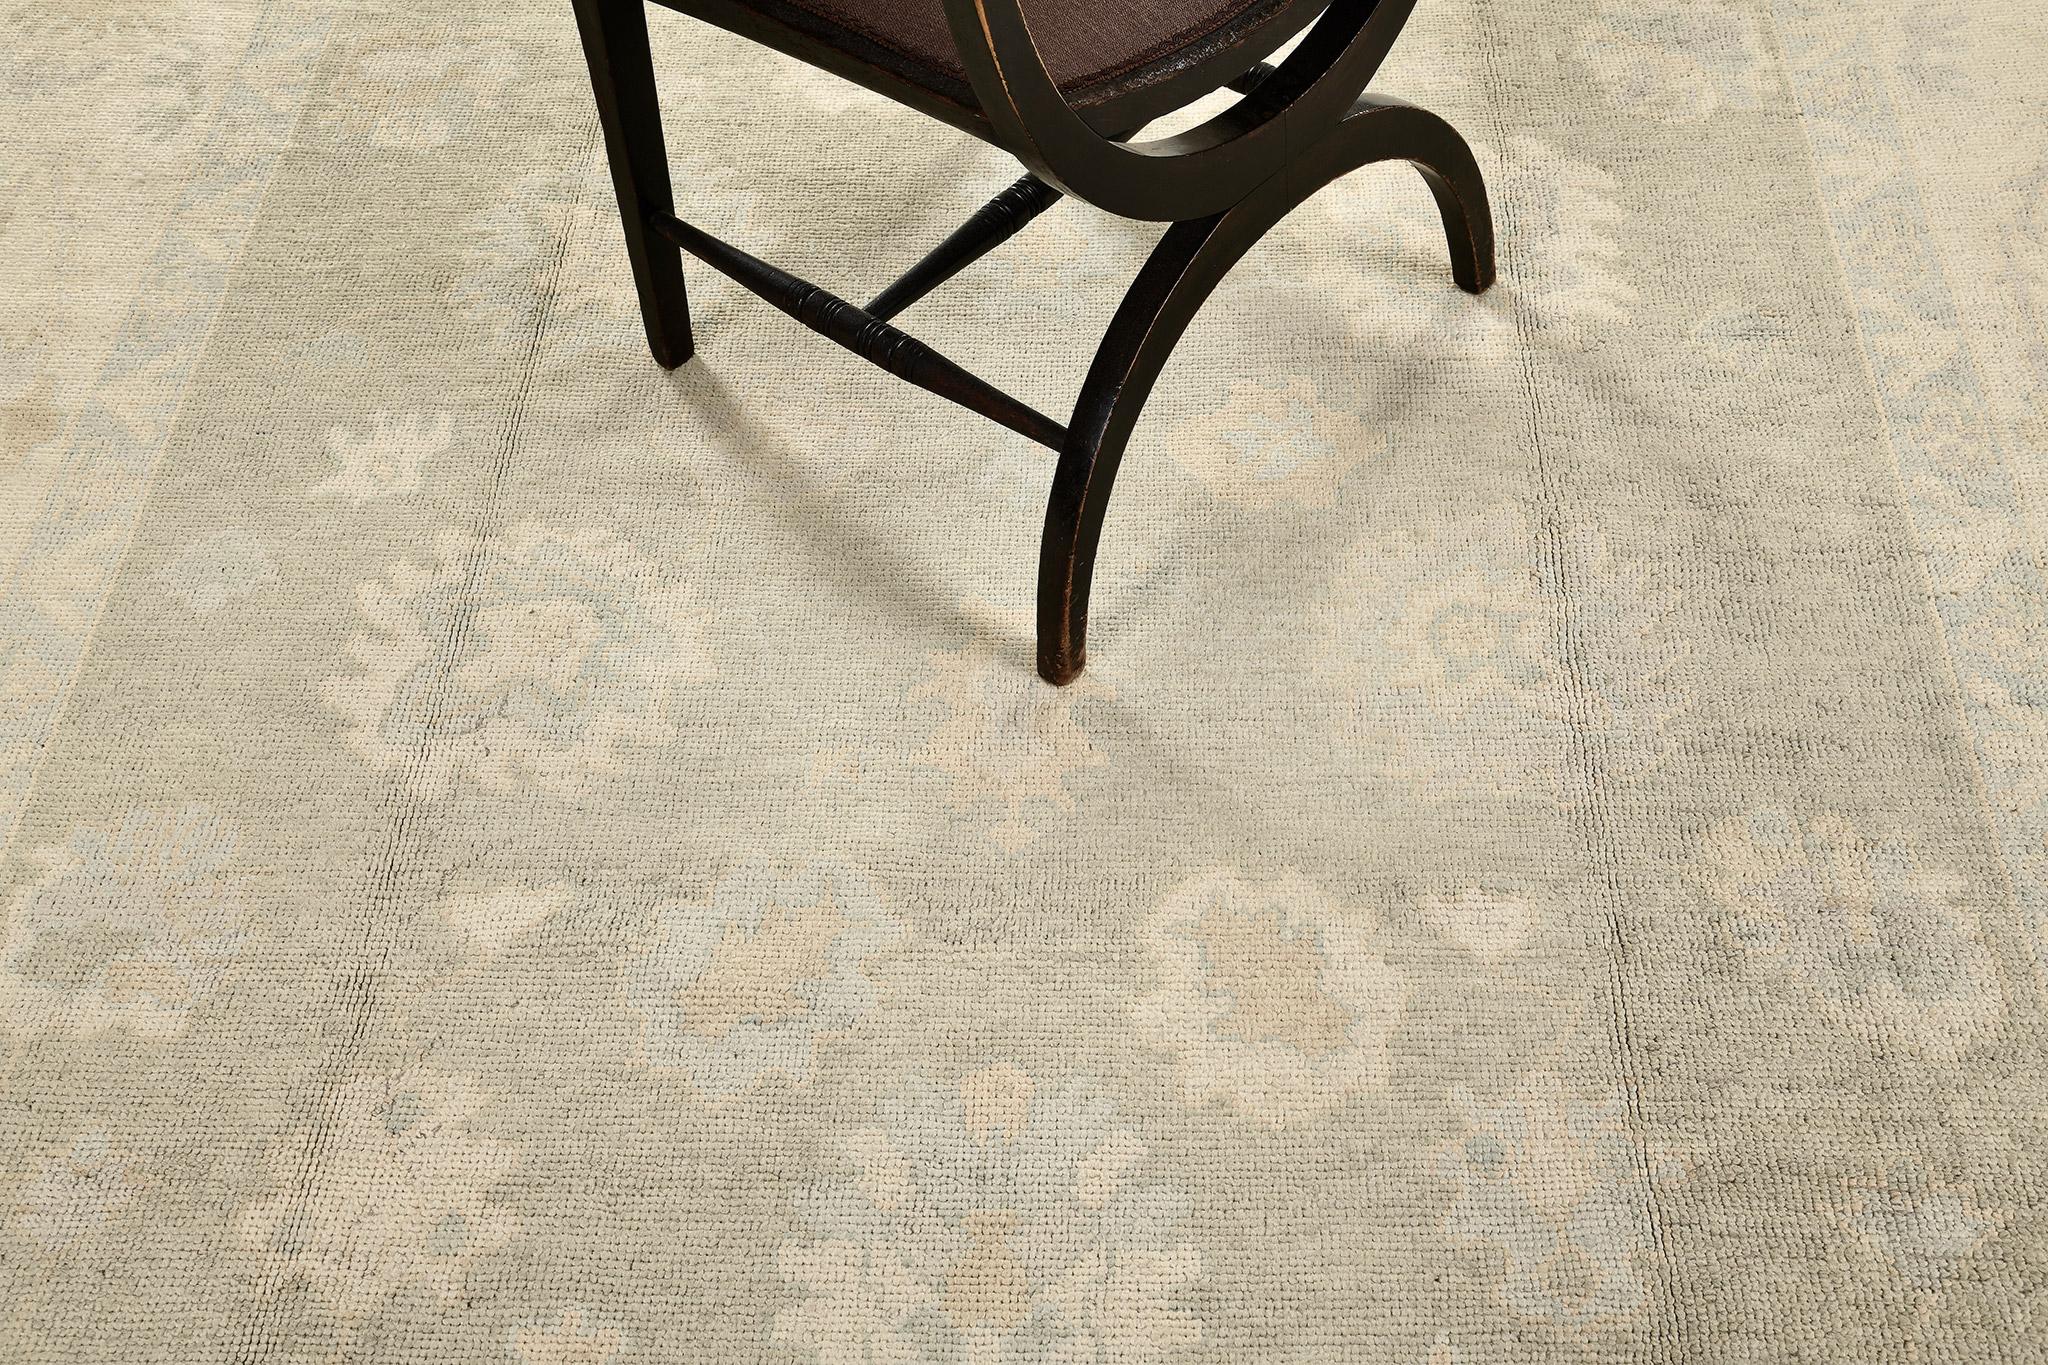 Durch die Verwendung von kühlen, gedeckten Farbtönen strahlt dieser fesselnde Oushak-Teppich eine schlichte Eleganz aus. Kunstvoll aus handgesponnener Wolle gefertigt, trägt es kunstvolle Bordüren aus blühenden Palmetten, gefolgt von einem